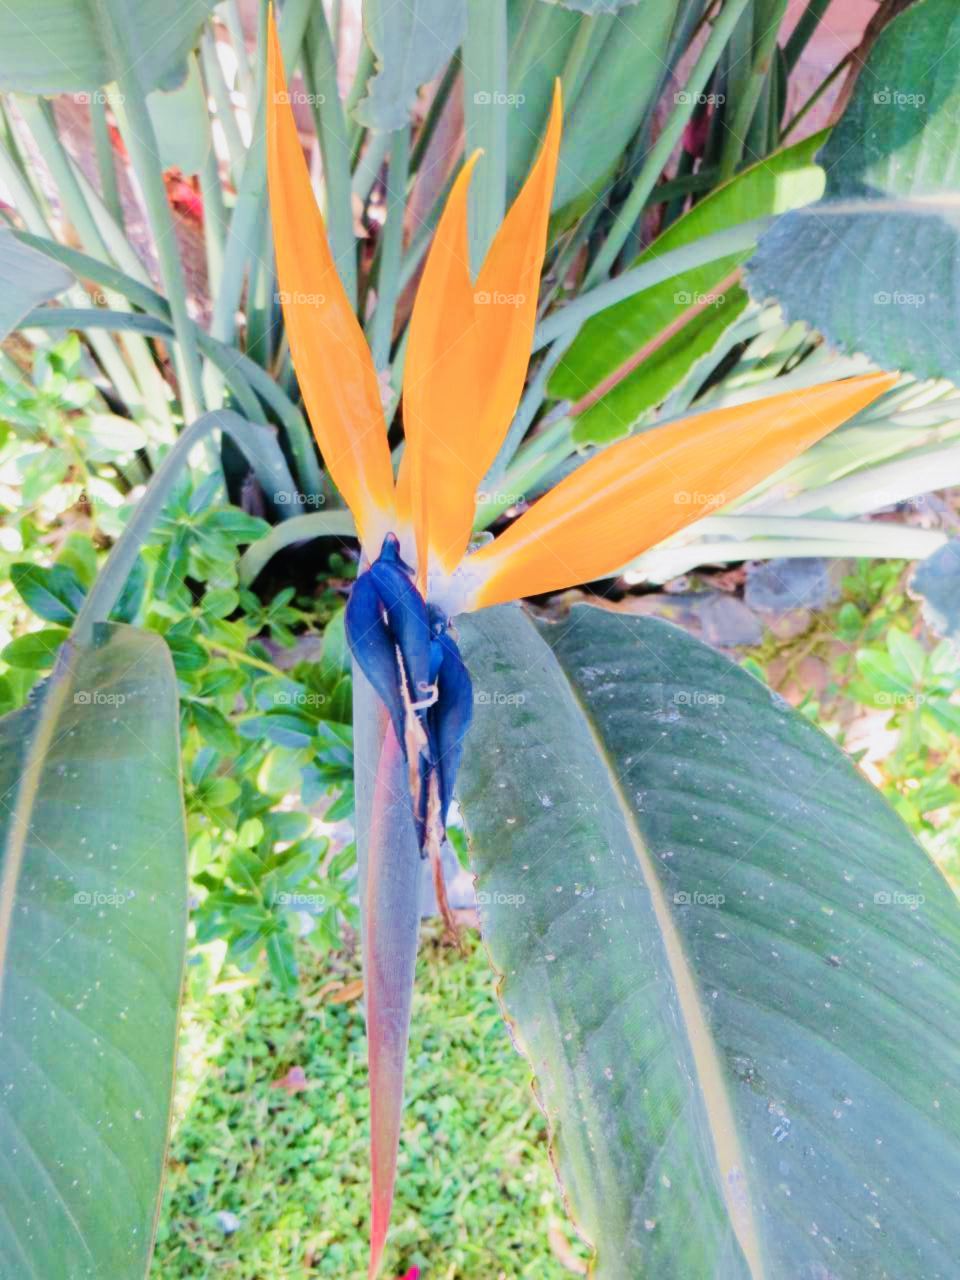 parrot flower 